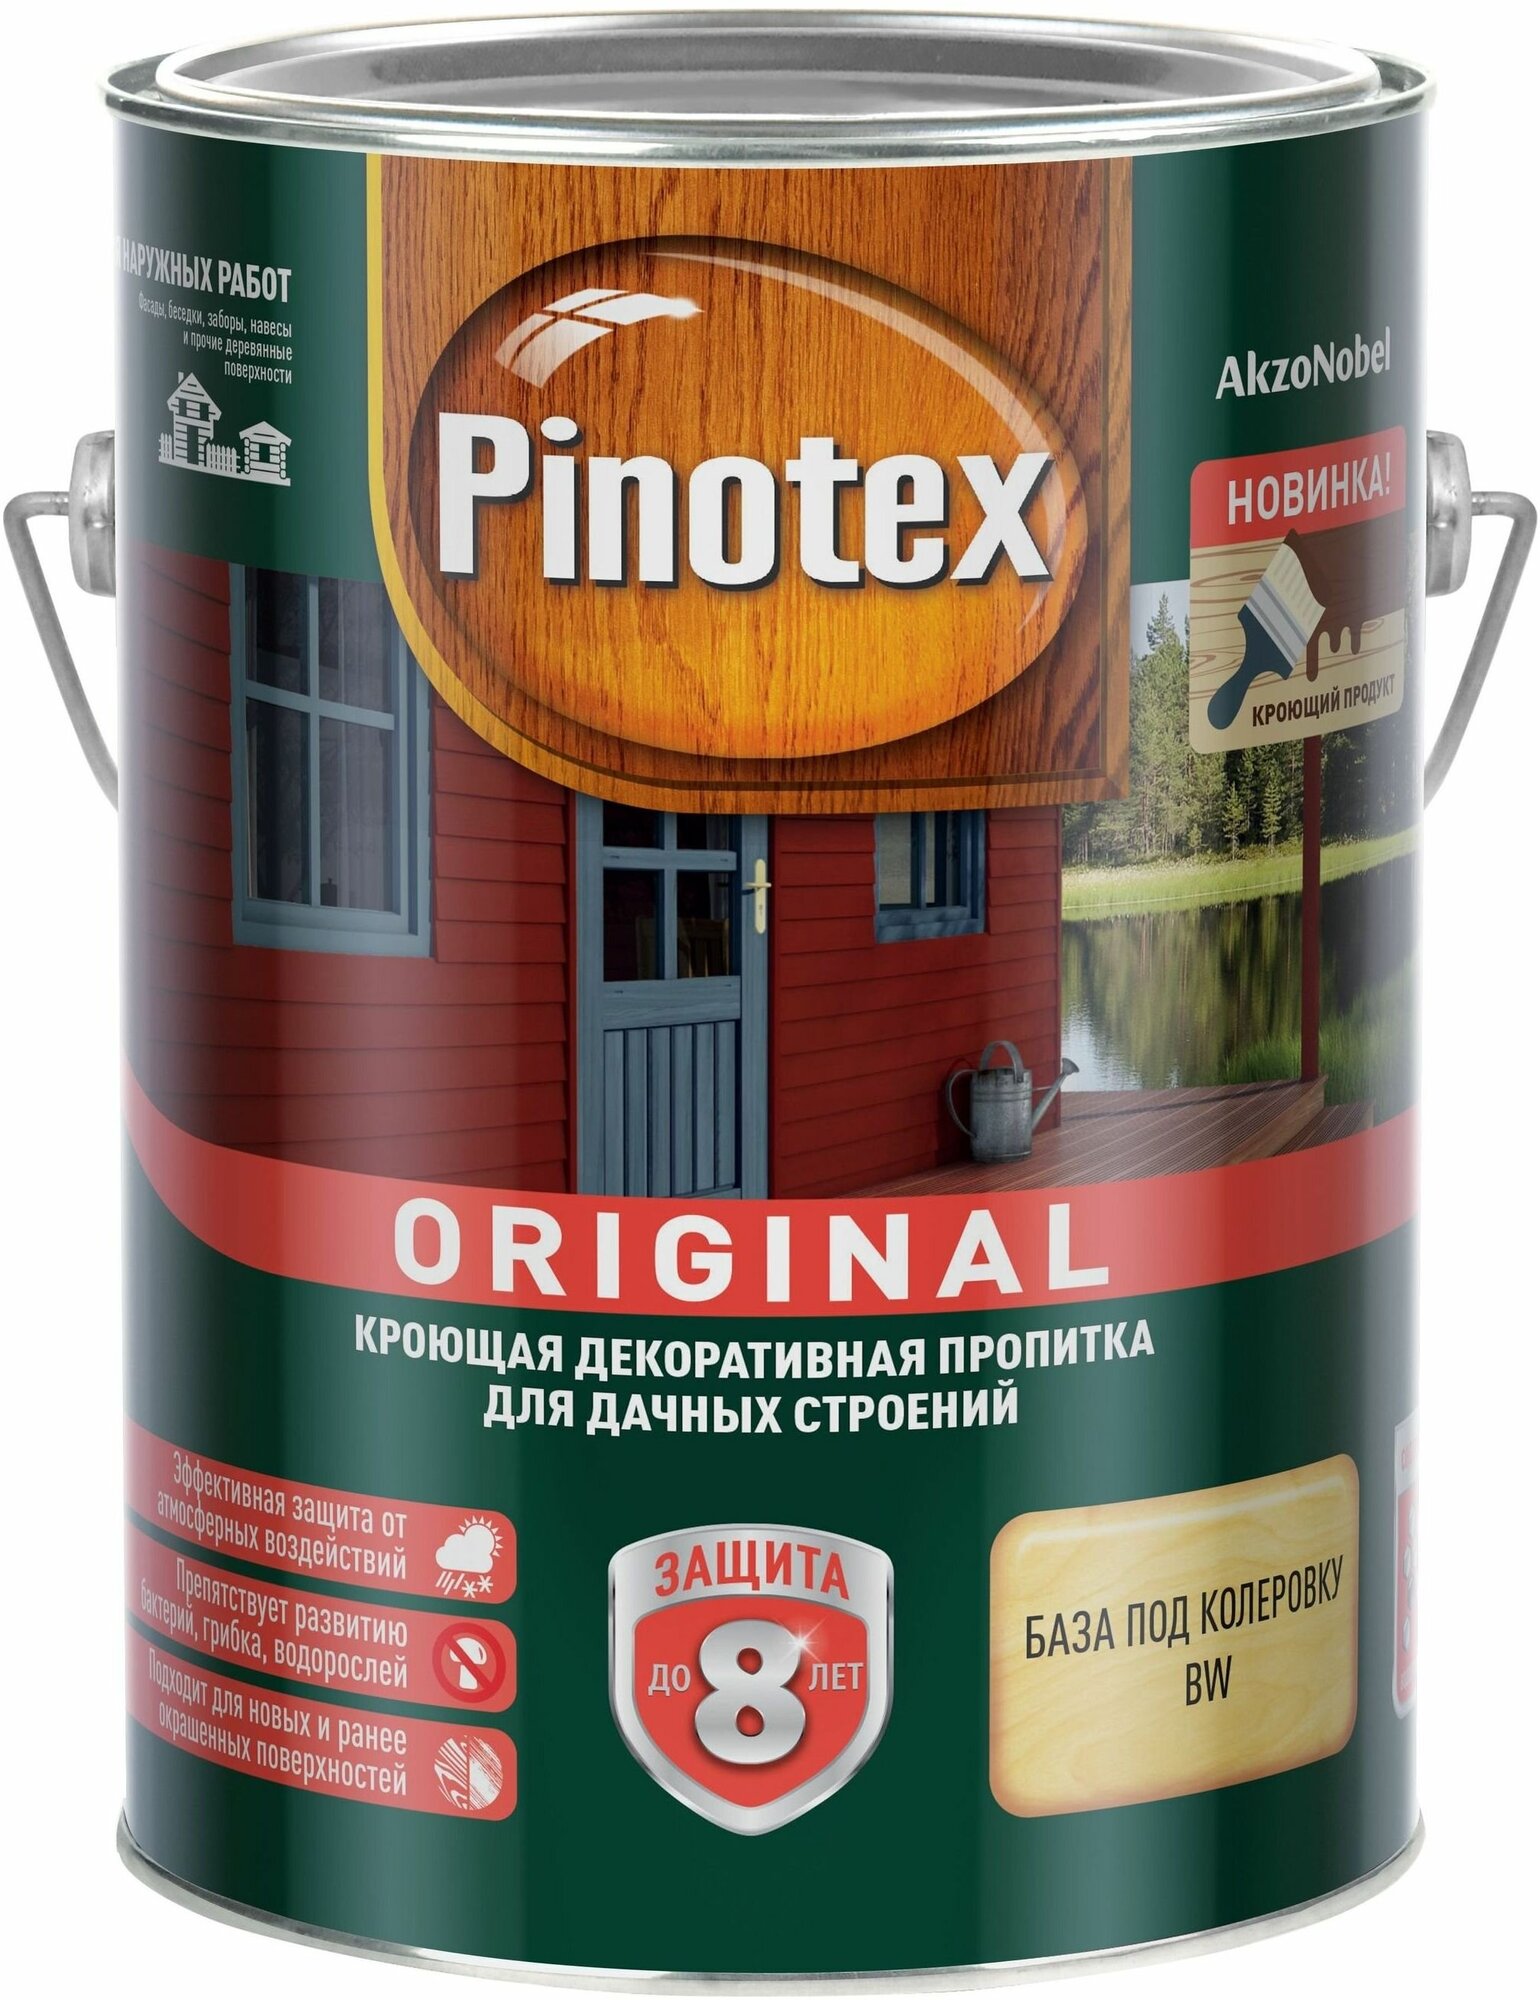 Антисептик для древесины Pinotex - фото №10